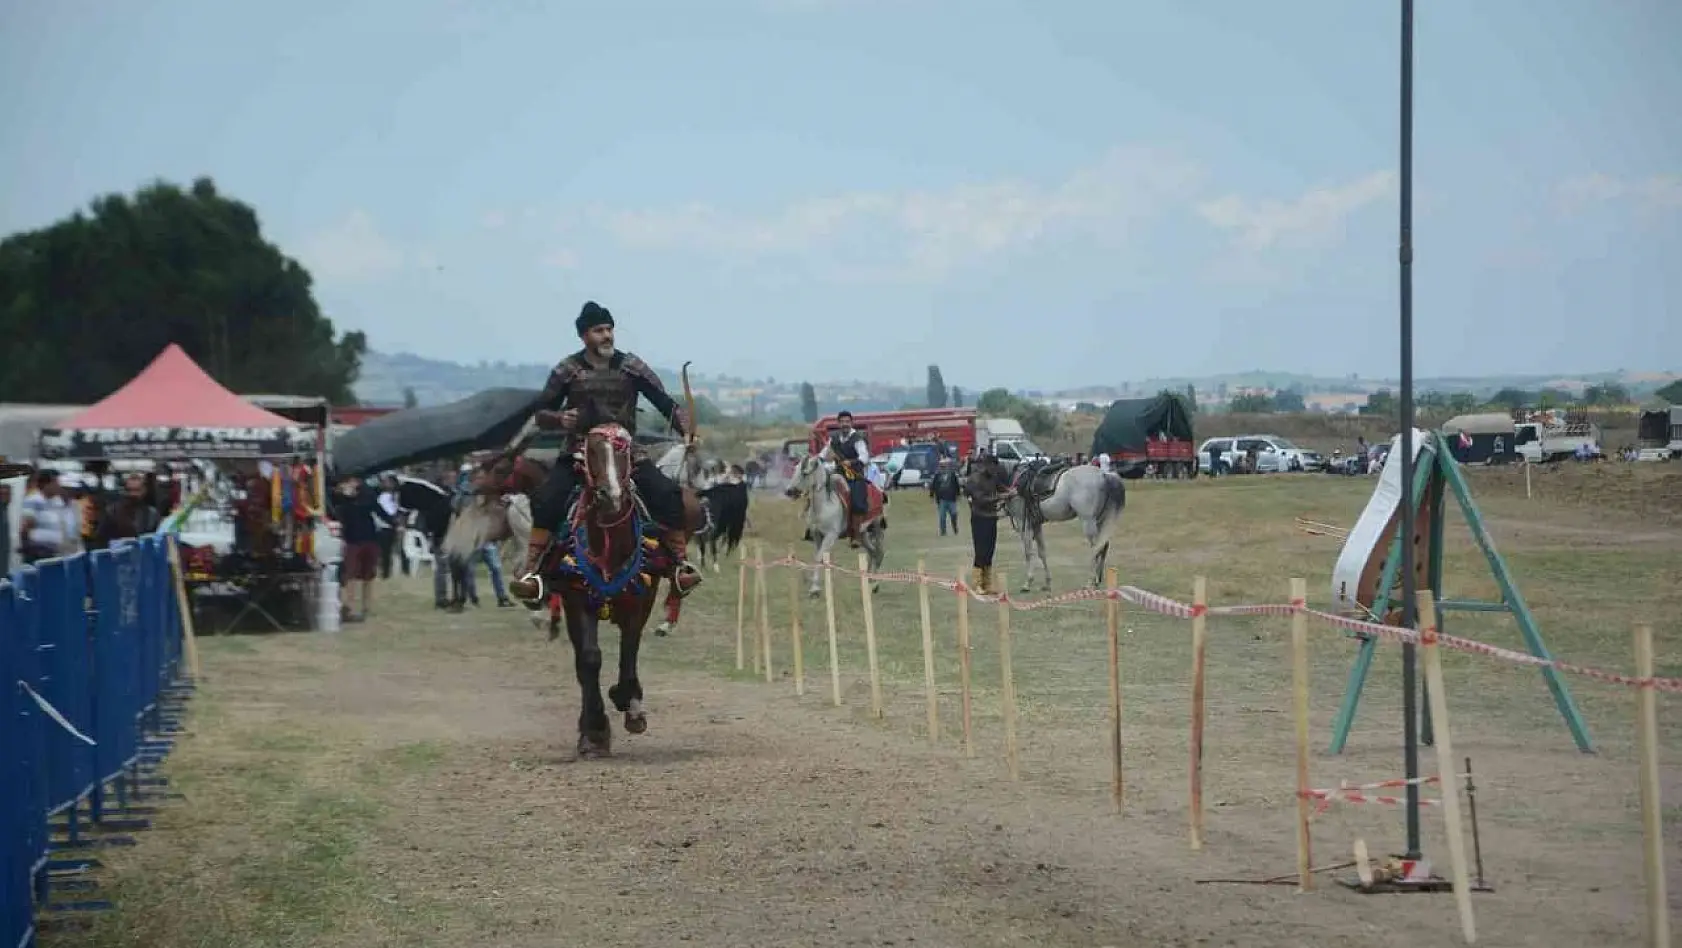 Rahvan at yarışları 41'nci kez koşuldu